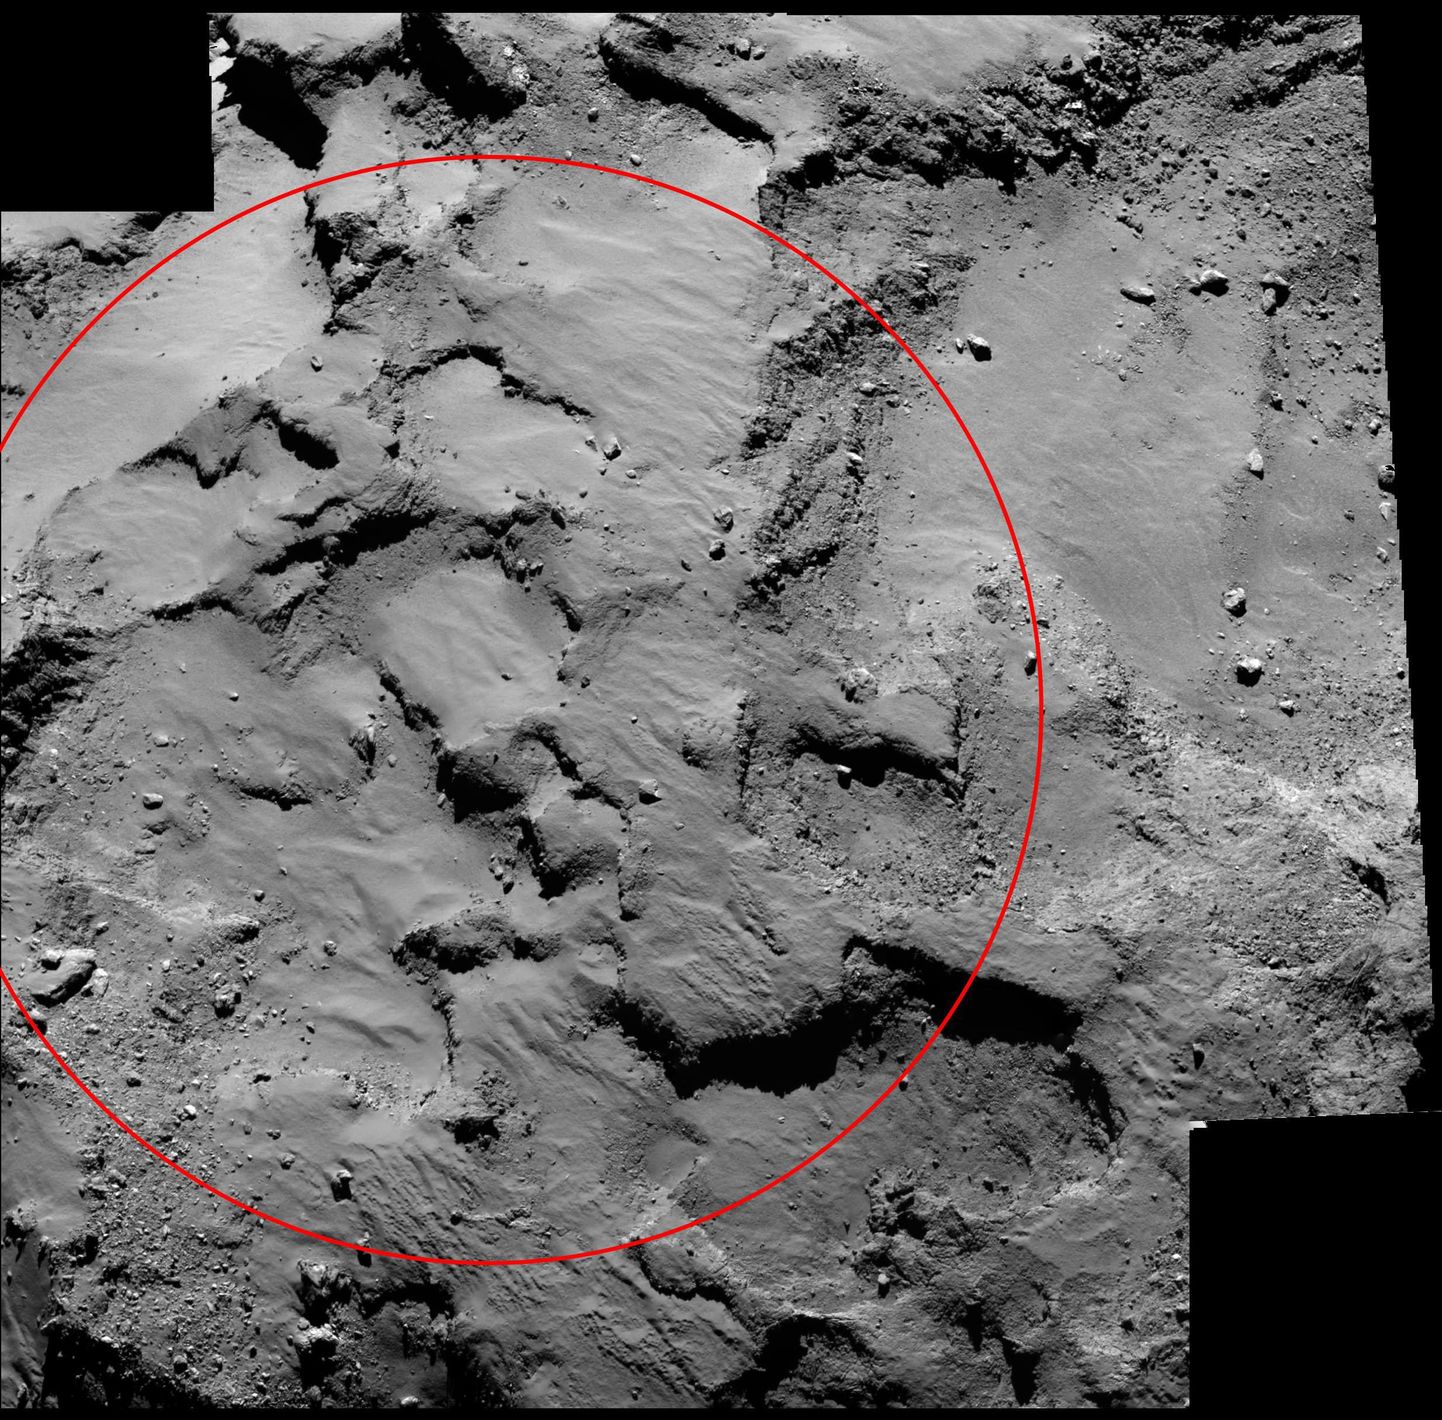 Paik komeedil 67P, kuhu Rosetta sondi uurimisrobot Philae peaks maanduma